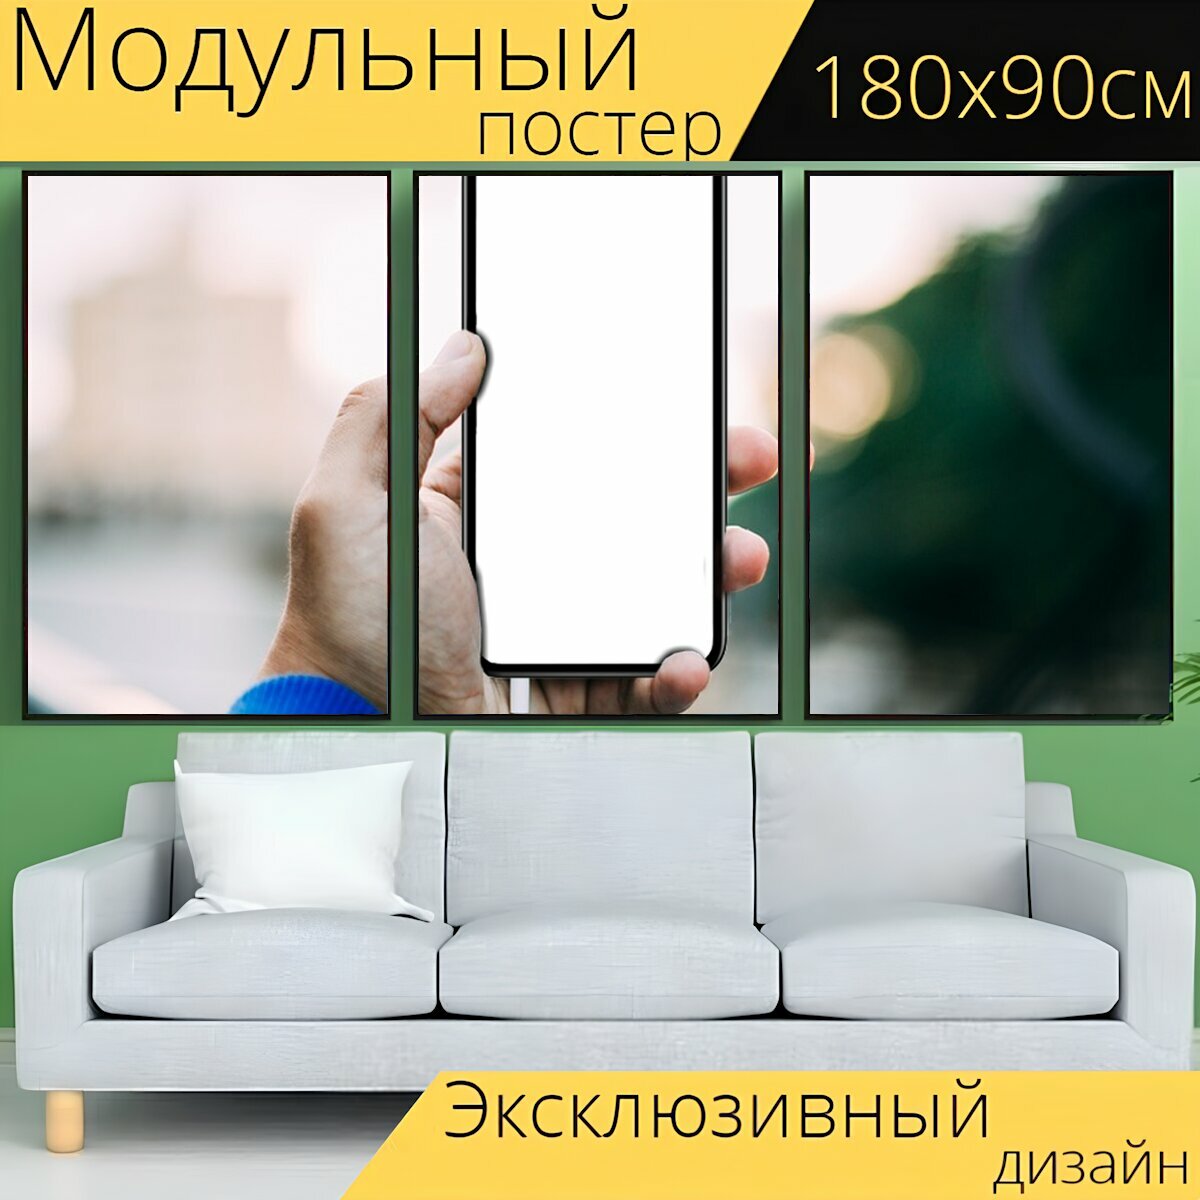 Модульный постер "Рука, мобильный телефон, смартфон" 180 x 90 см. для интерьера